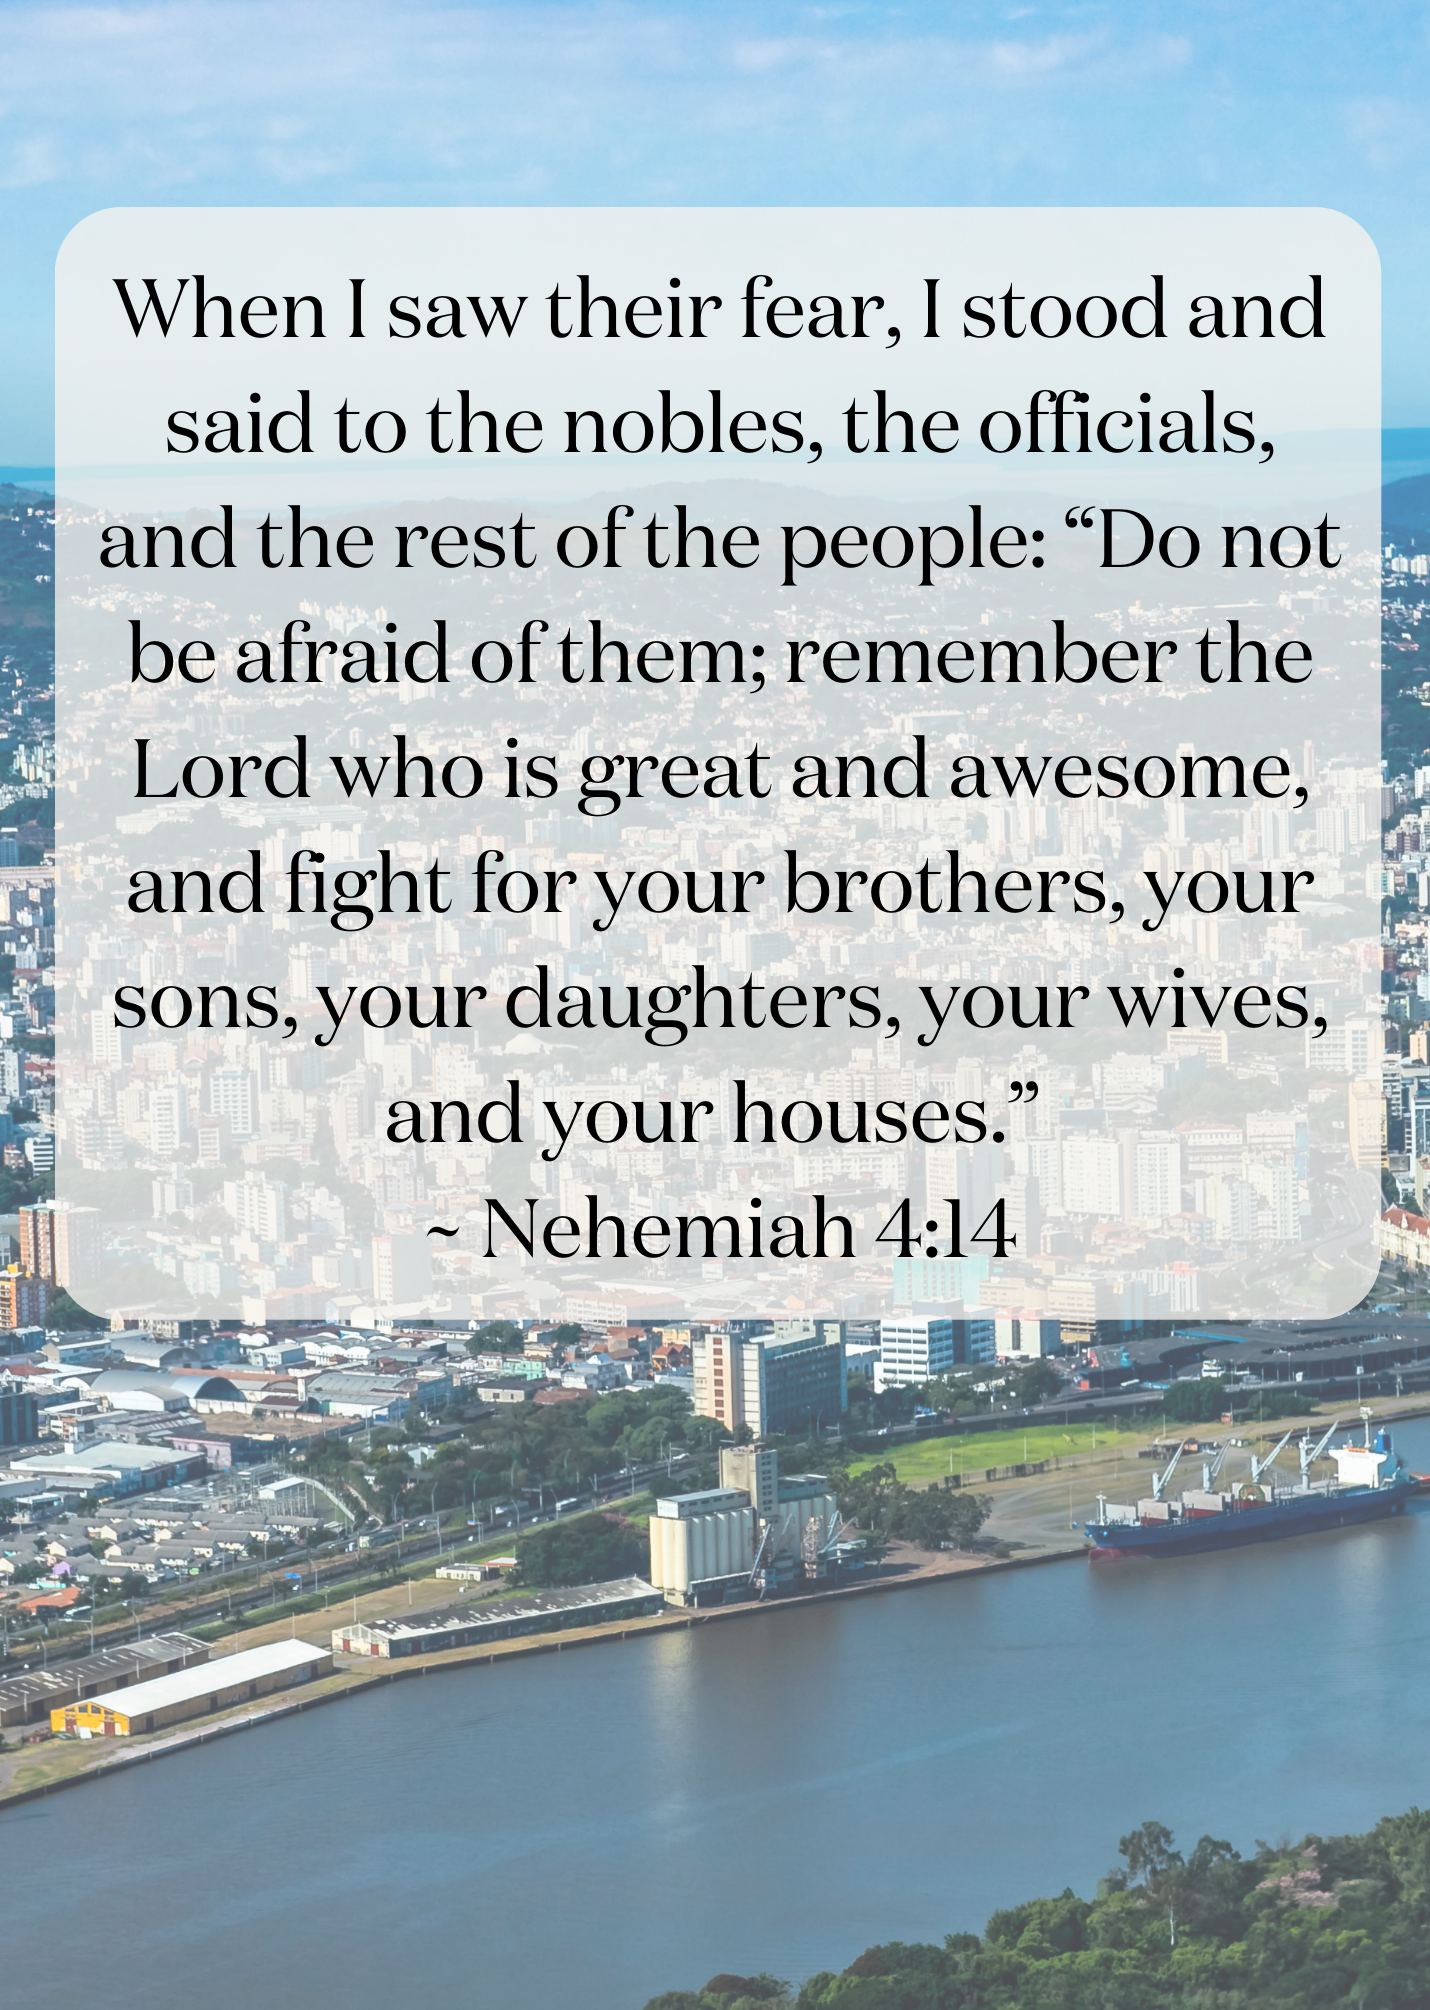 Nehemiah 4:14